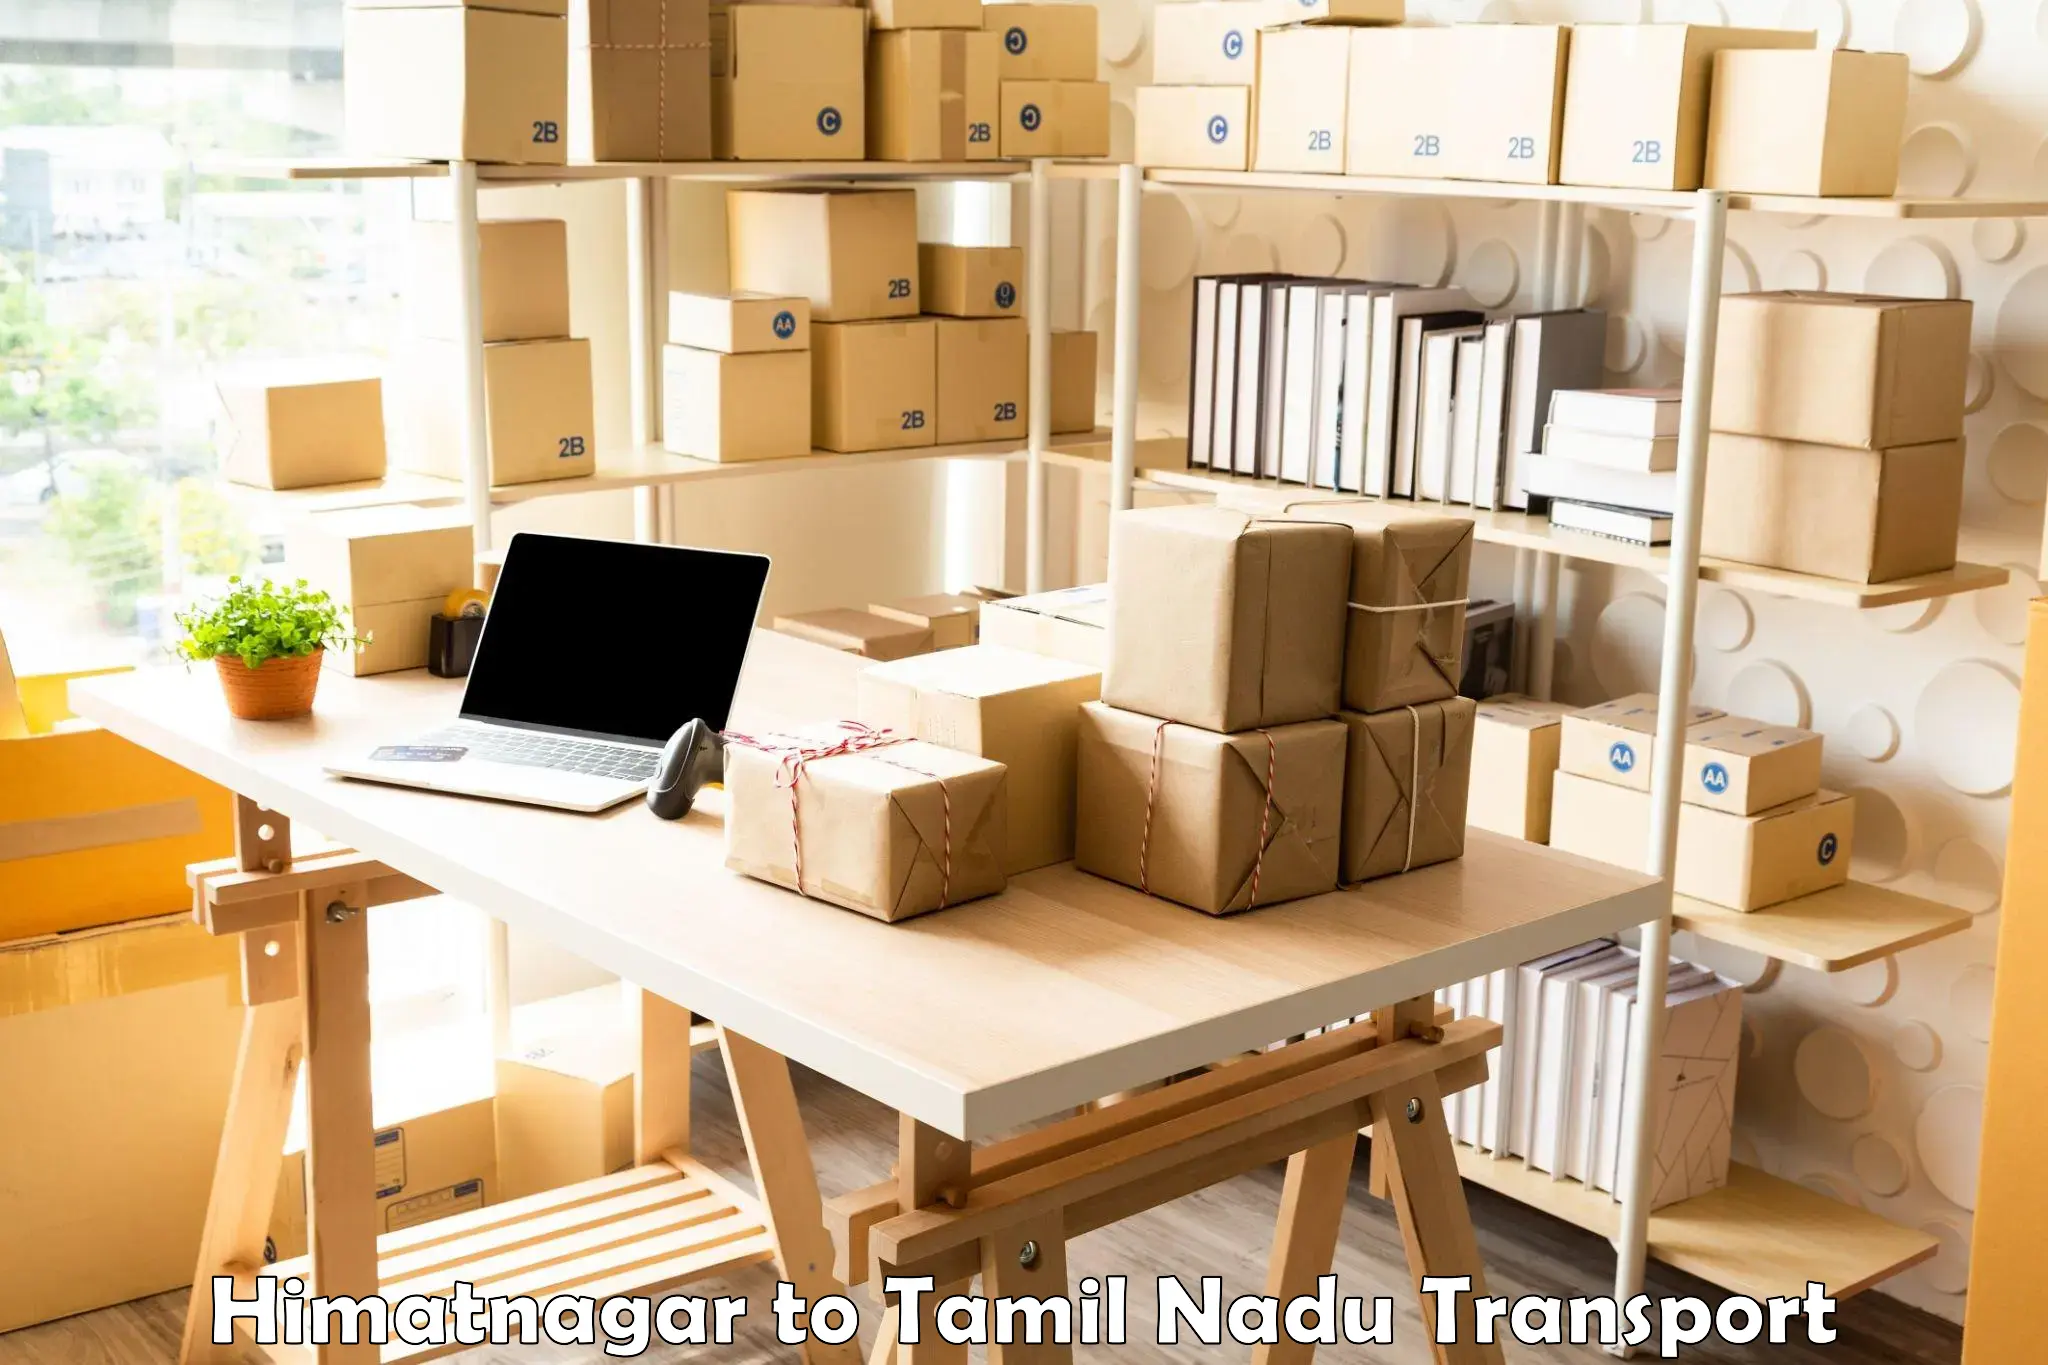 Goods delivery service Himatnagar to Cuddalore